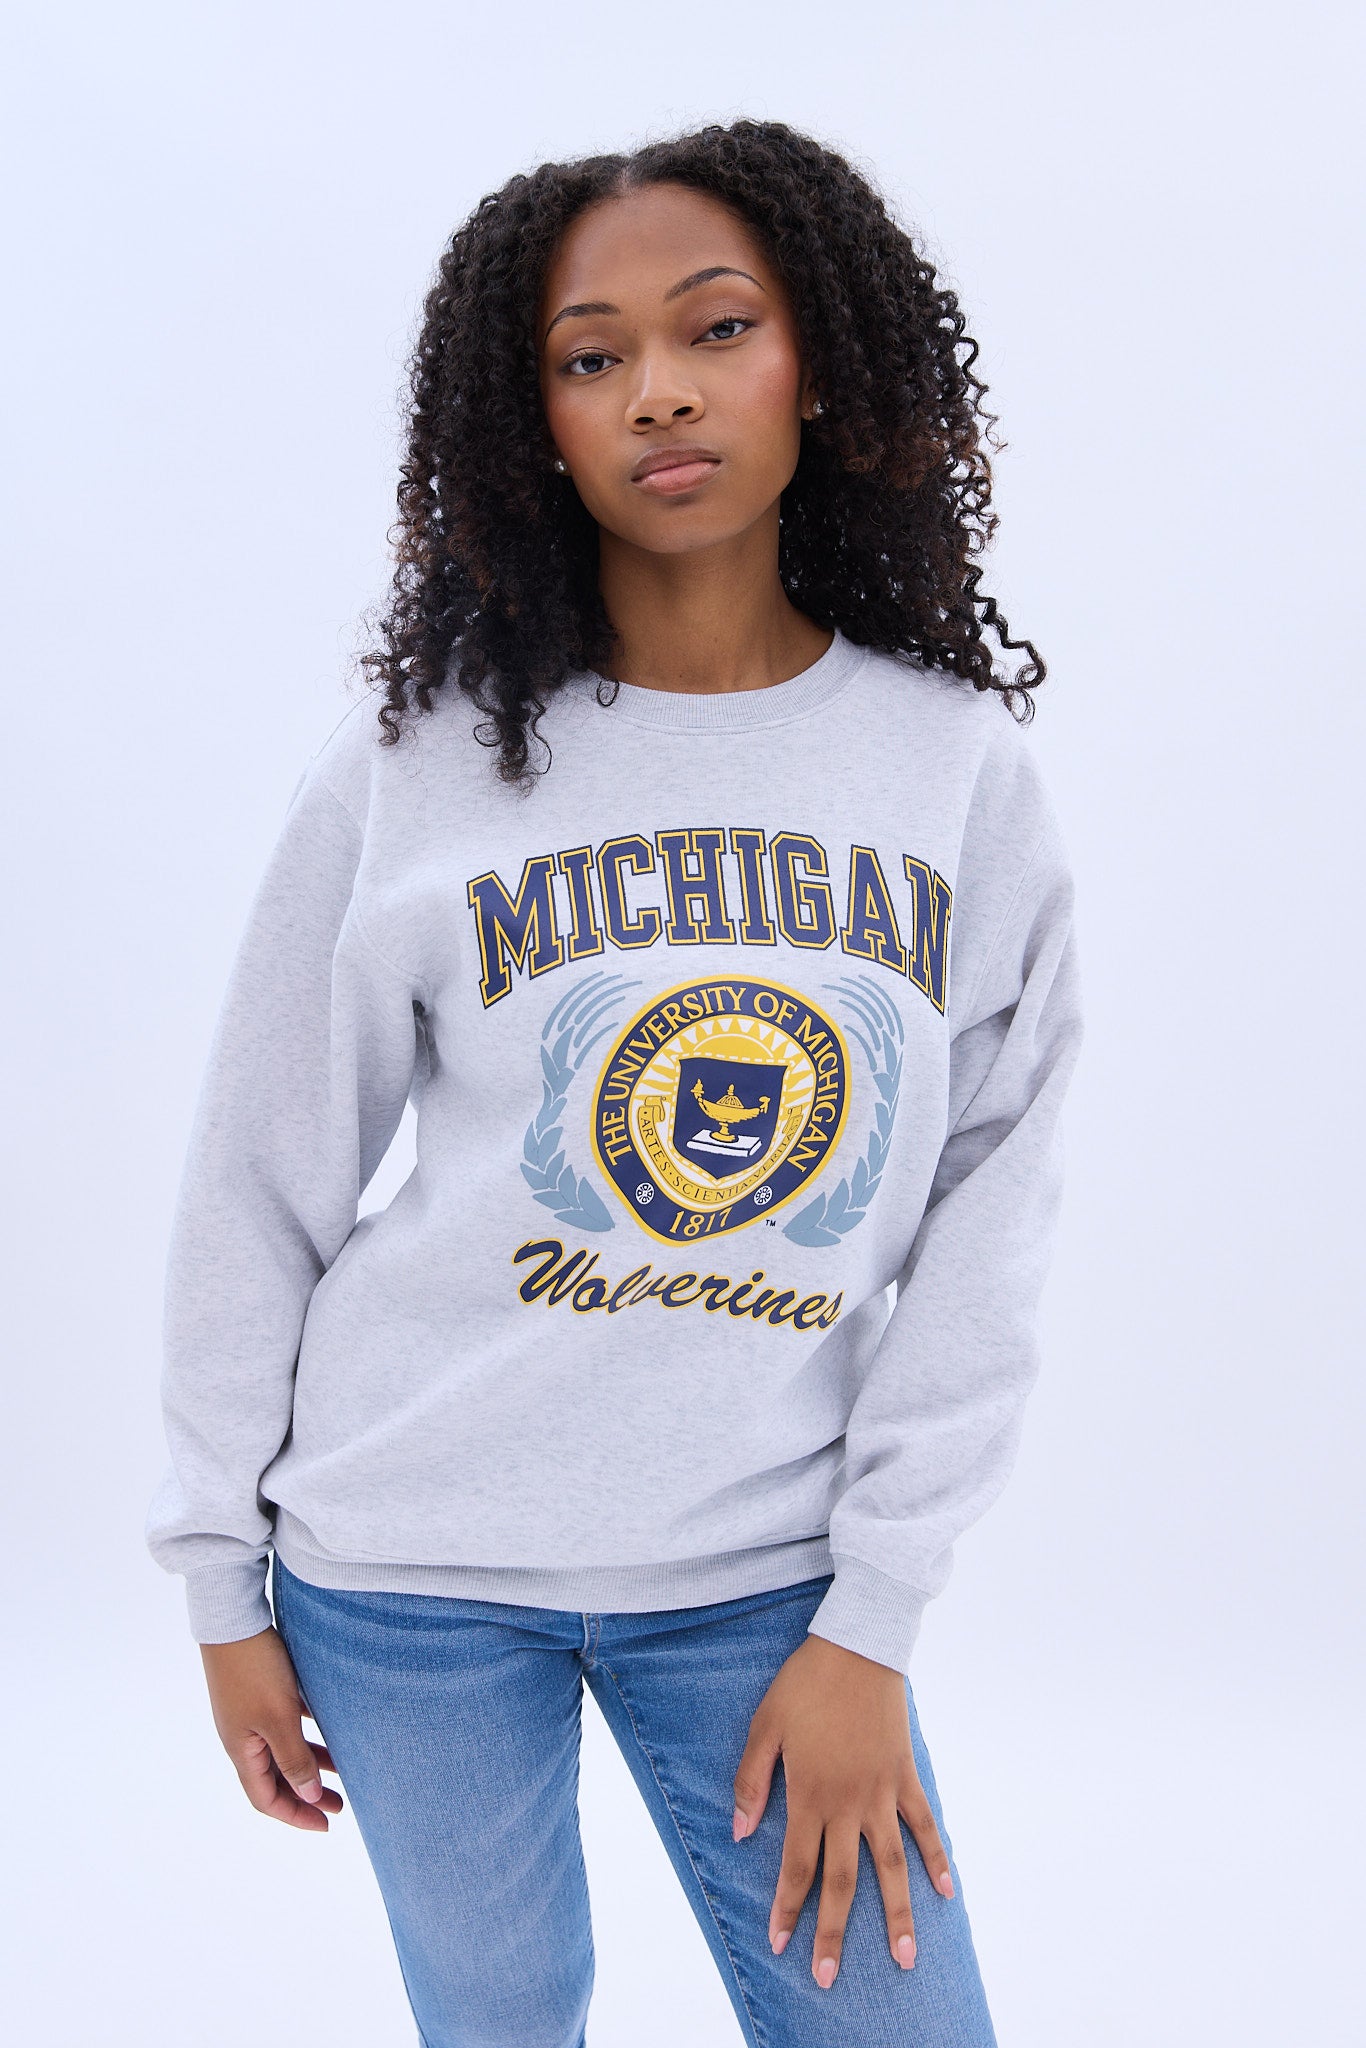 Michigan Wolverines Graphic Crew Neck Sweatshirt